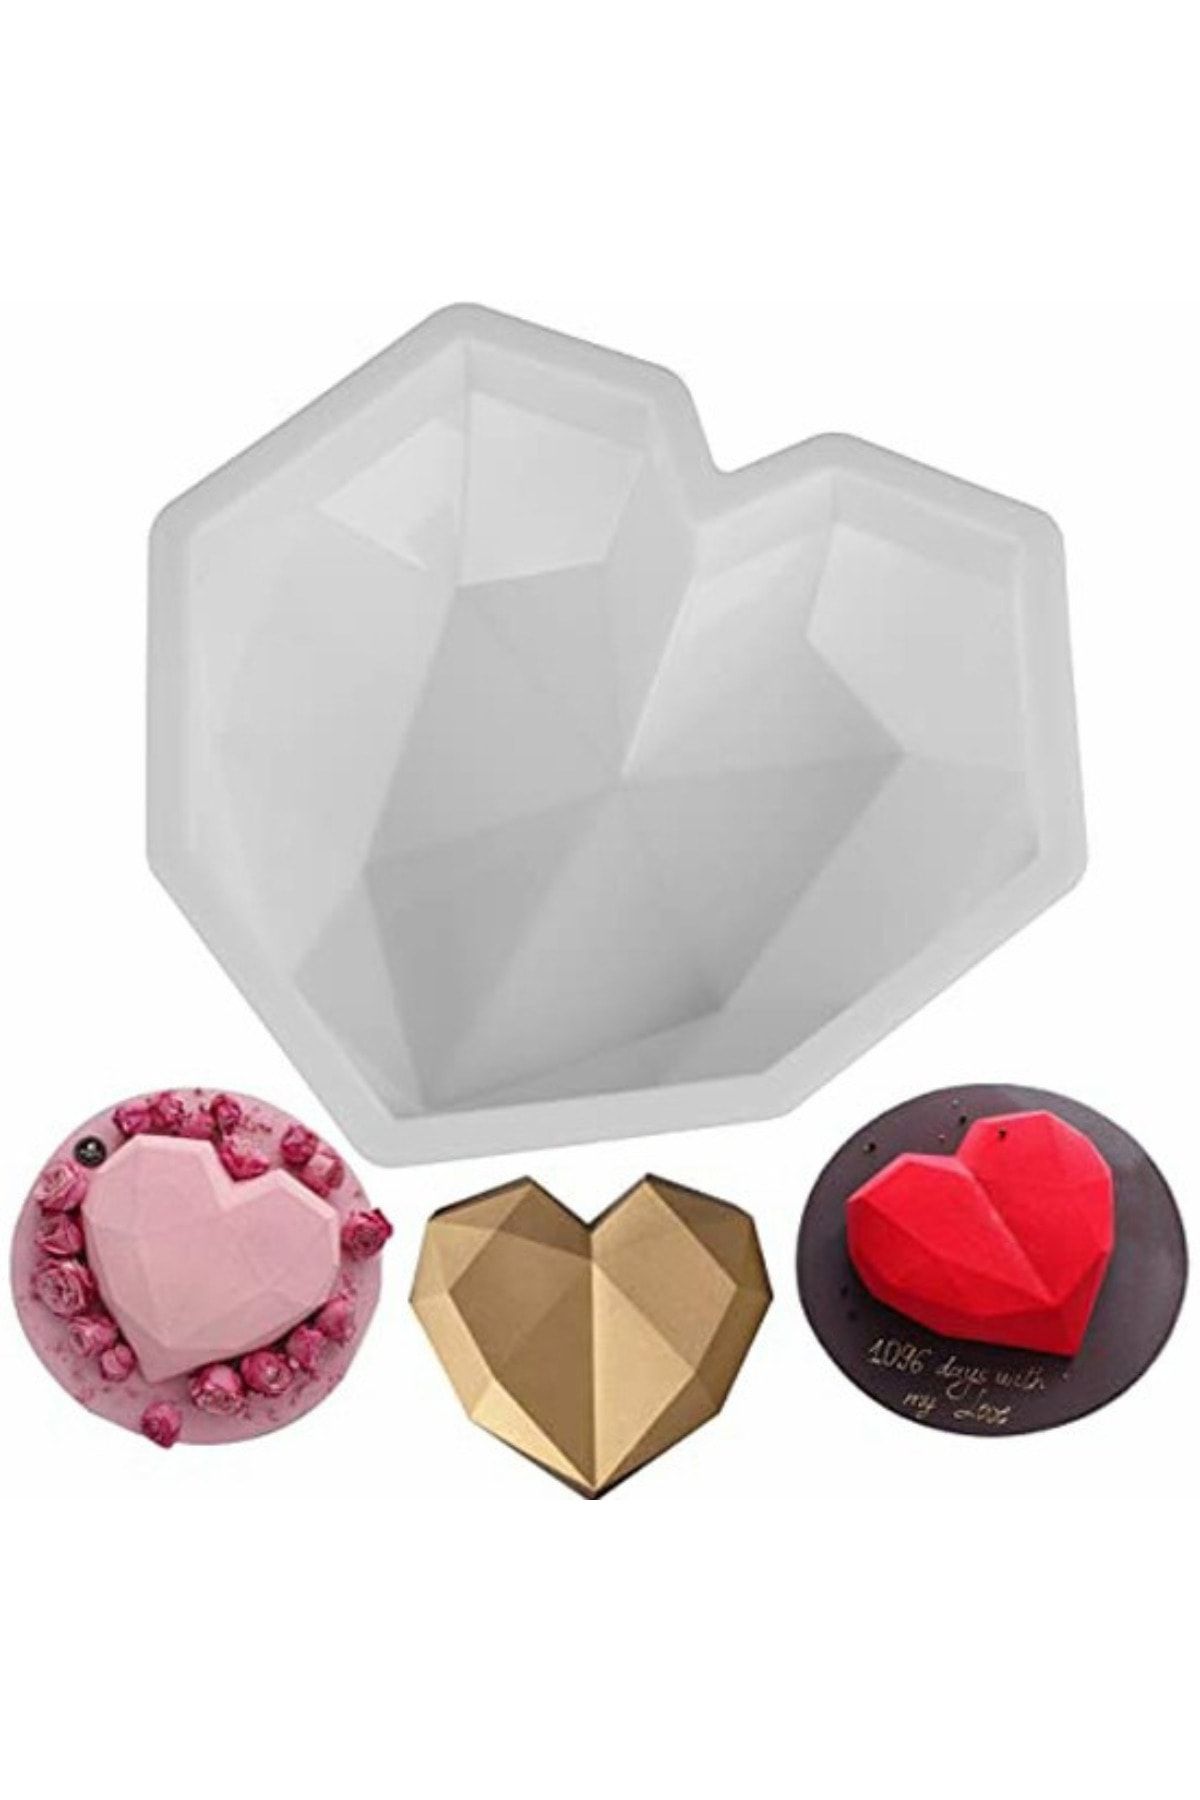 ELGALA Silikon Büyük Kristal Kalp Şekilli Pasta Kek Çikolata Kalıbı Geometrik Kalıp